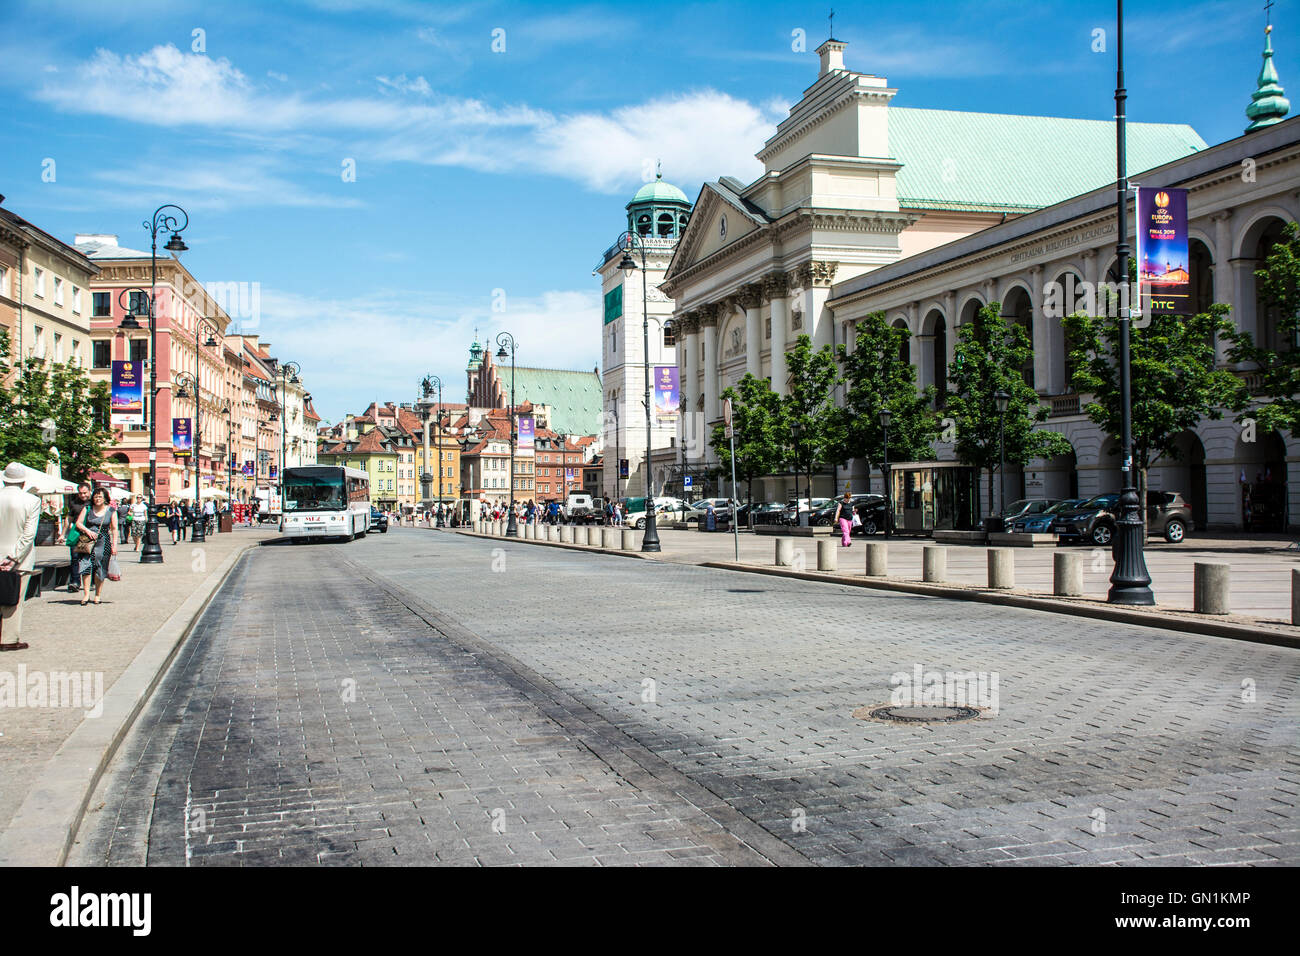 old town, Warsaw, Poland Stock Photo